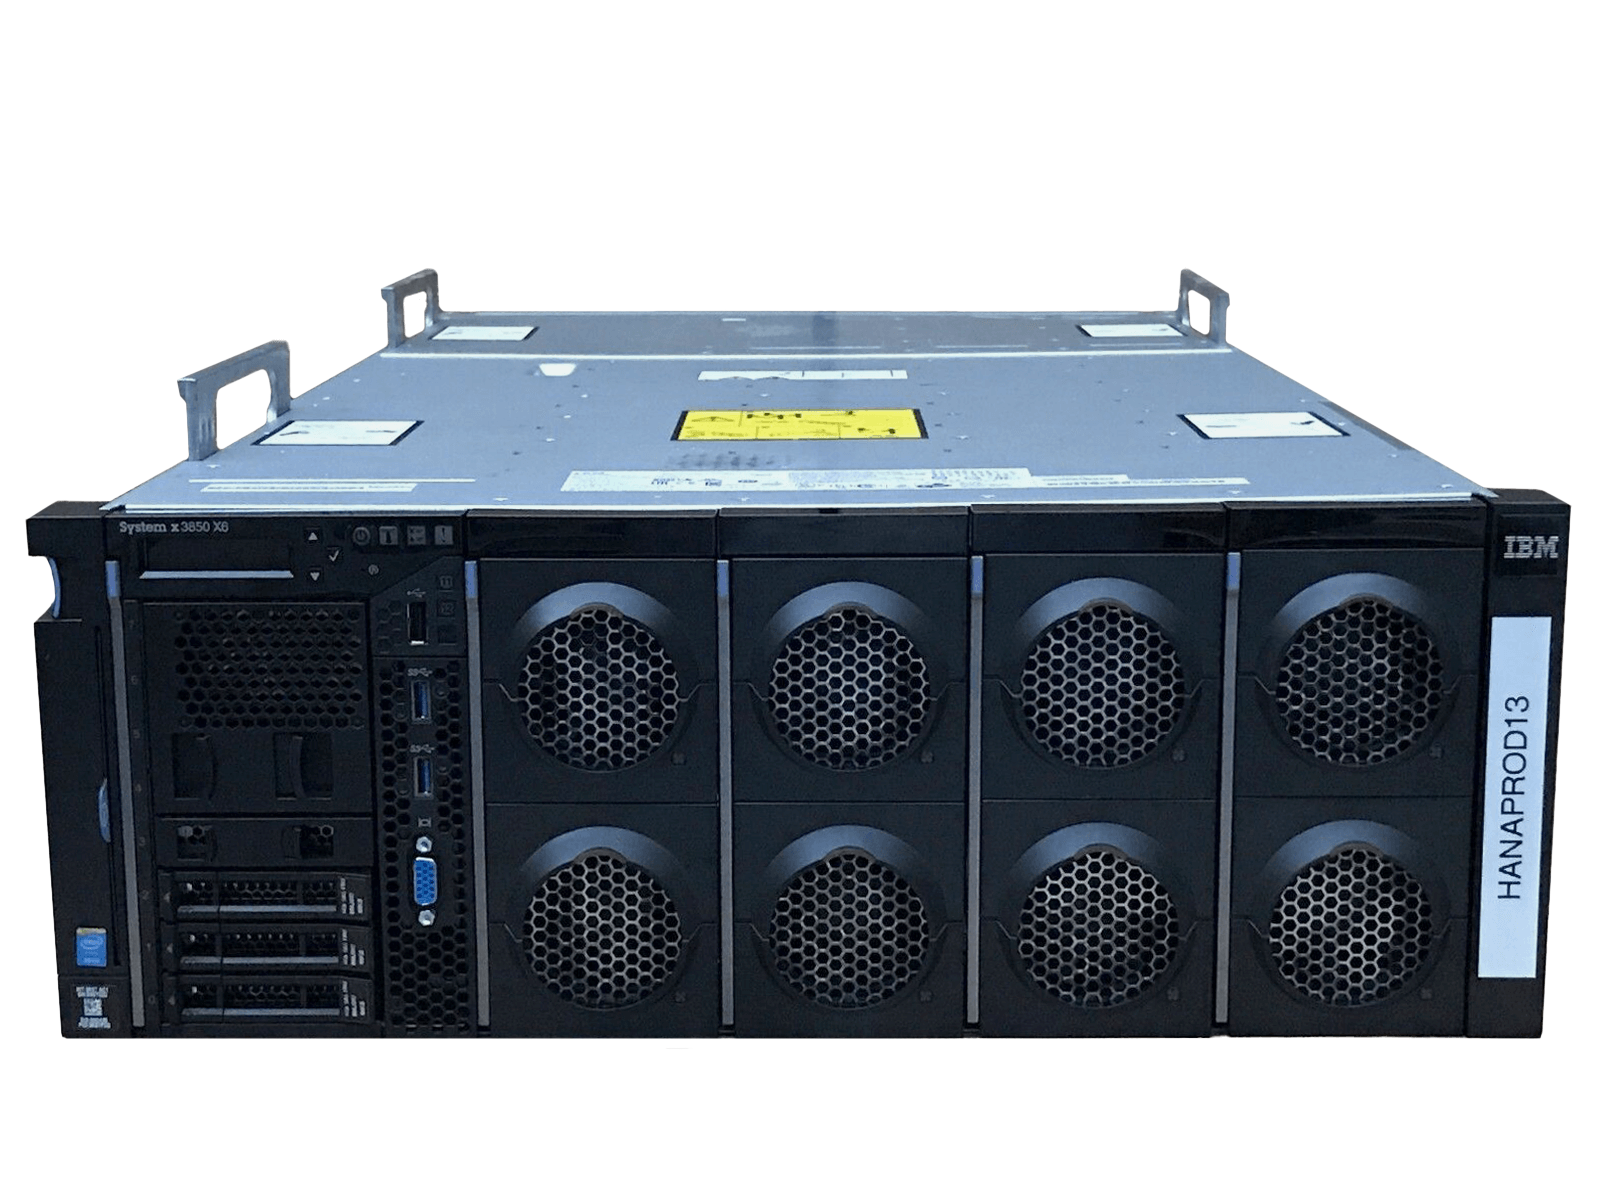 IBM x3850 X6 Server 4x Xeon E7-8870 v4 2048GB DDR4 RAM 3x 300GB 10K 4x 900W PSU